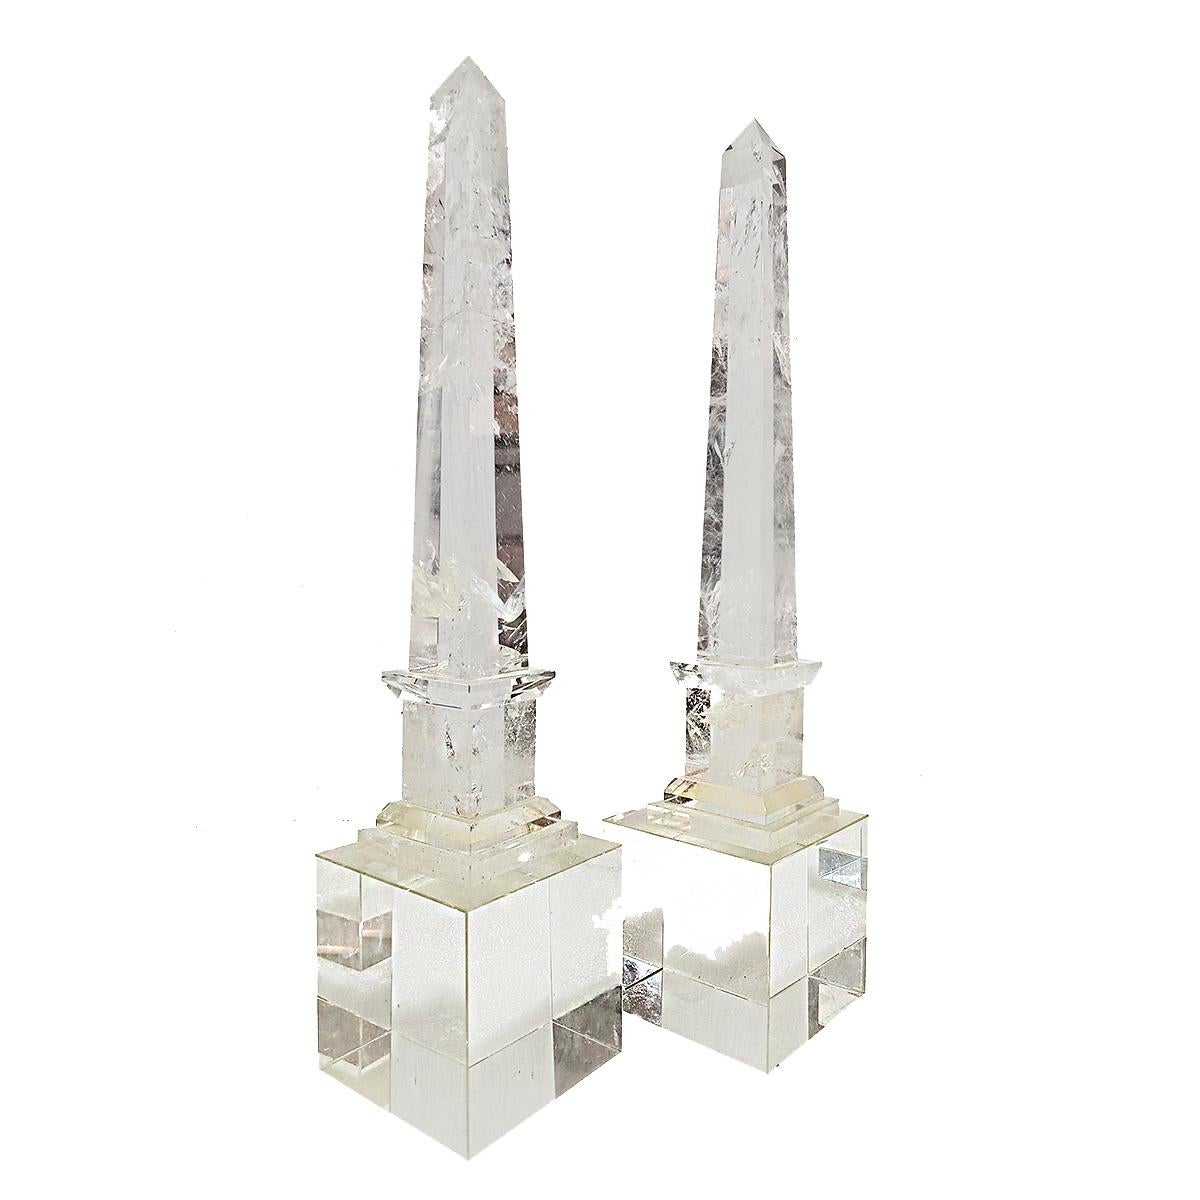 Ein Paar Obelisken aus kontinentalem Bergkristall aus Frankreich, Ende des 19. Jahrhunderts. 

Die eigentlichen Obelisken sind 12 Zoll hoch und jeweils auf einem 4-Zoll-Kristallwürfel eines späteren Datums montiert, was eine Gesamthöhe von 18 Zoll